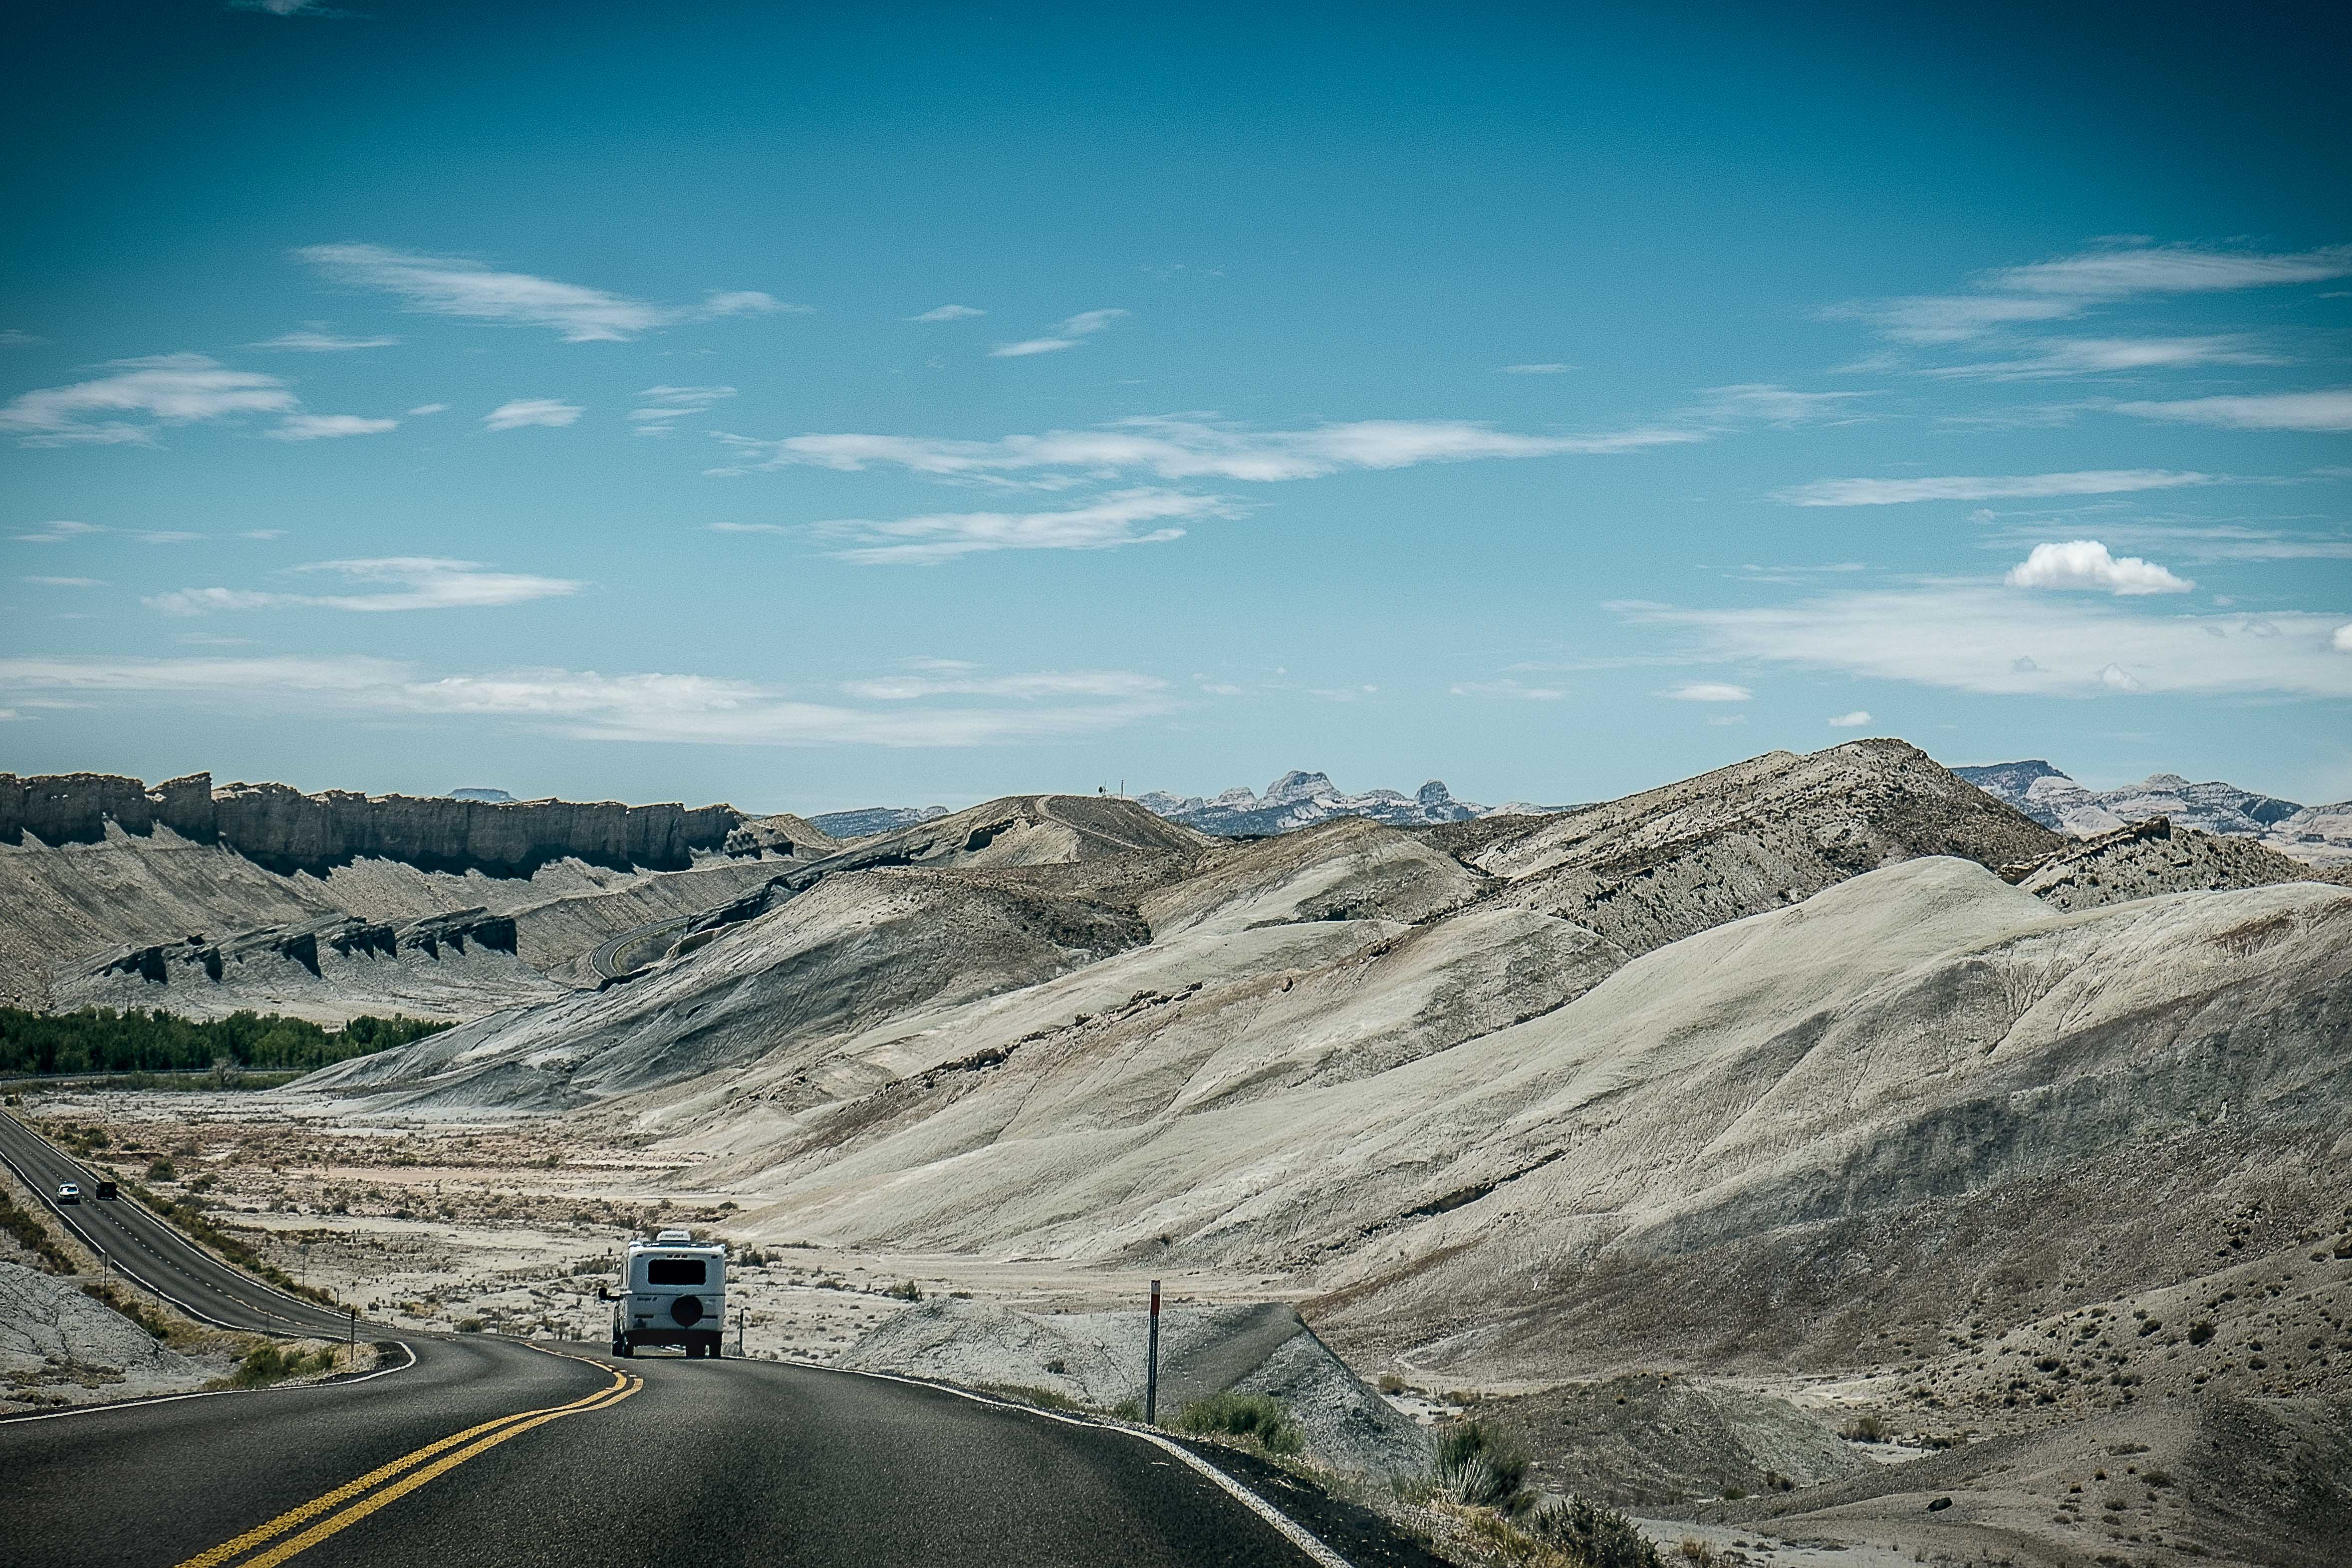 On the Road. (Utah Hwy. 24)